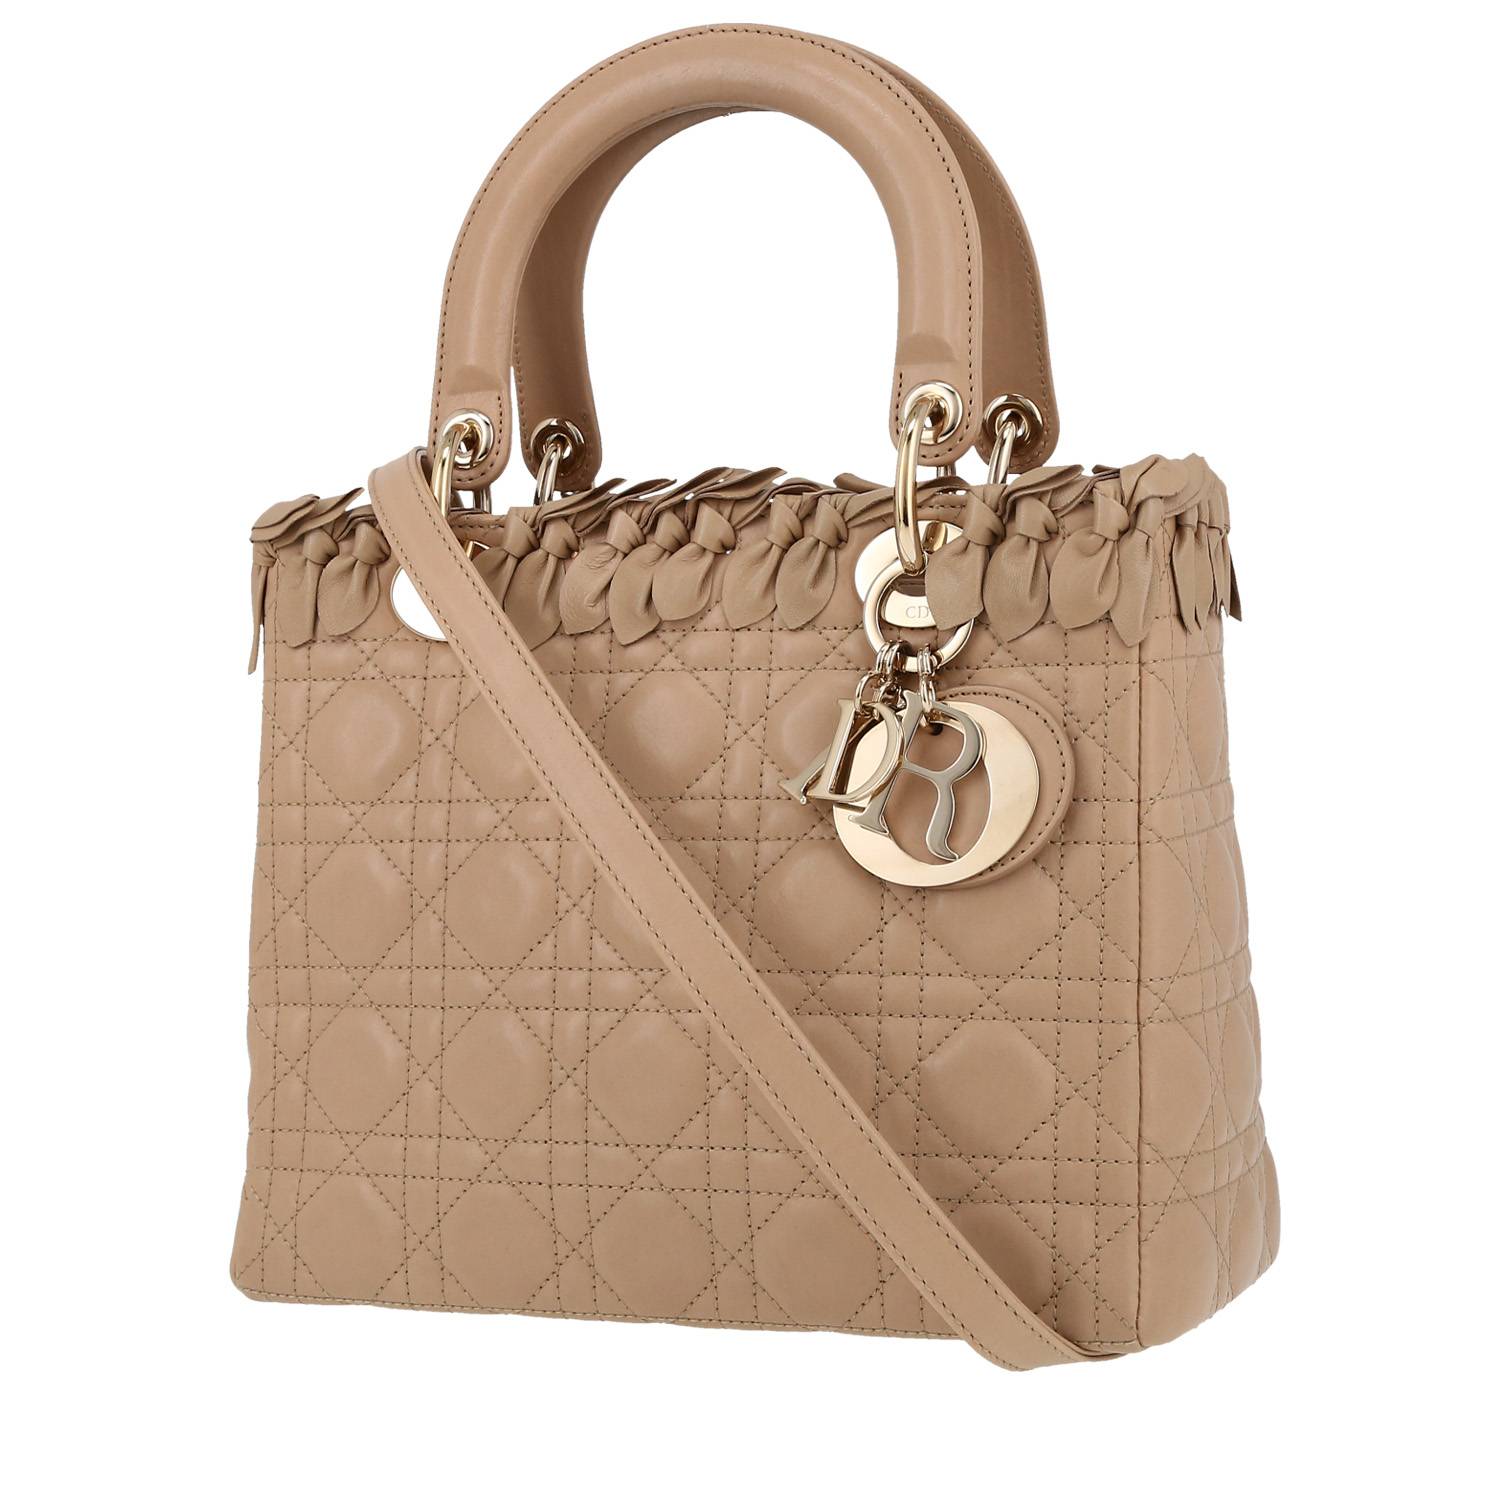 Lady Dior Handbag In Leather Cannage